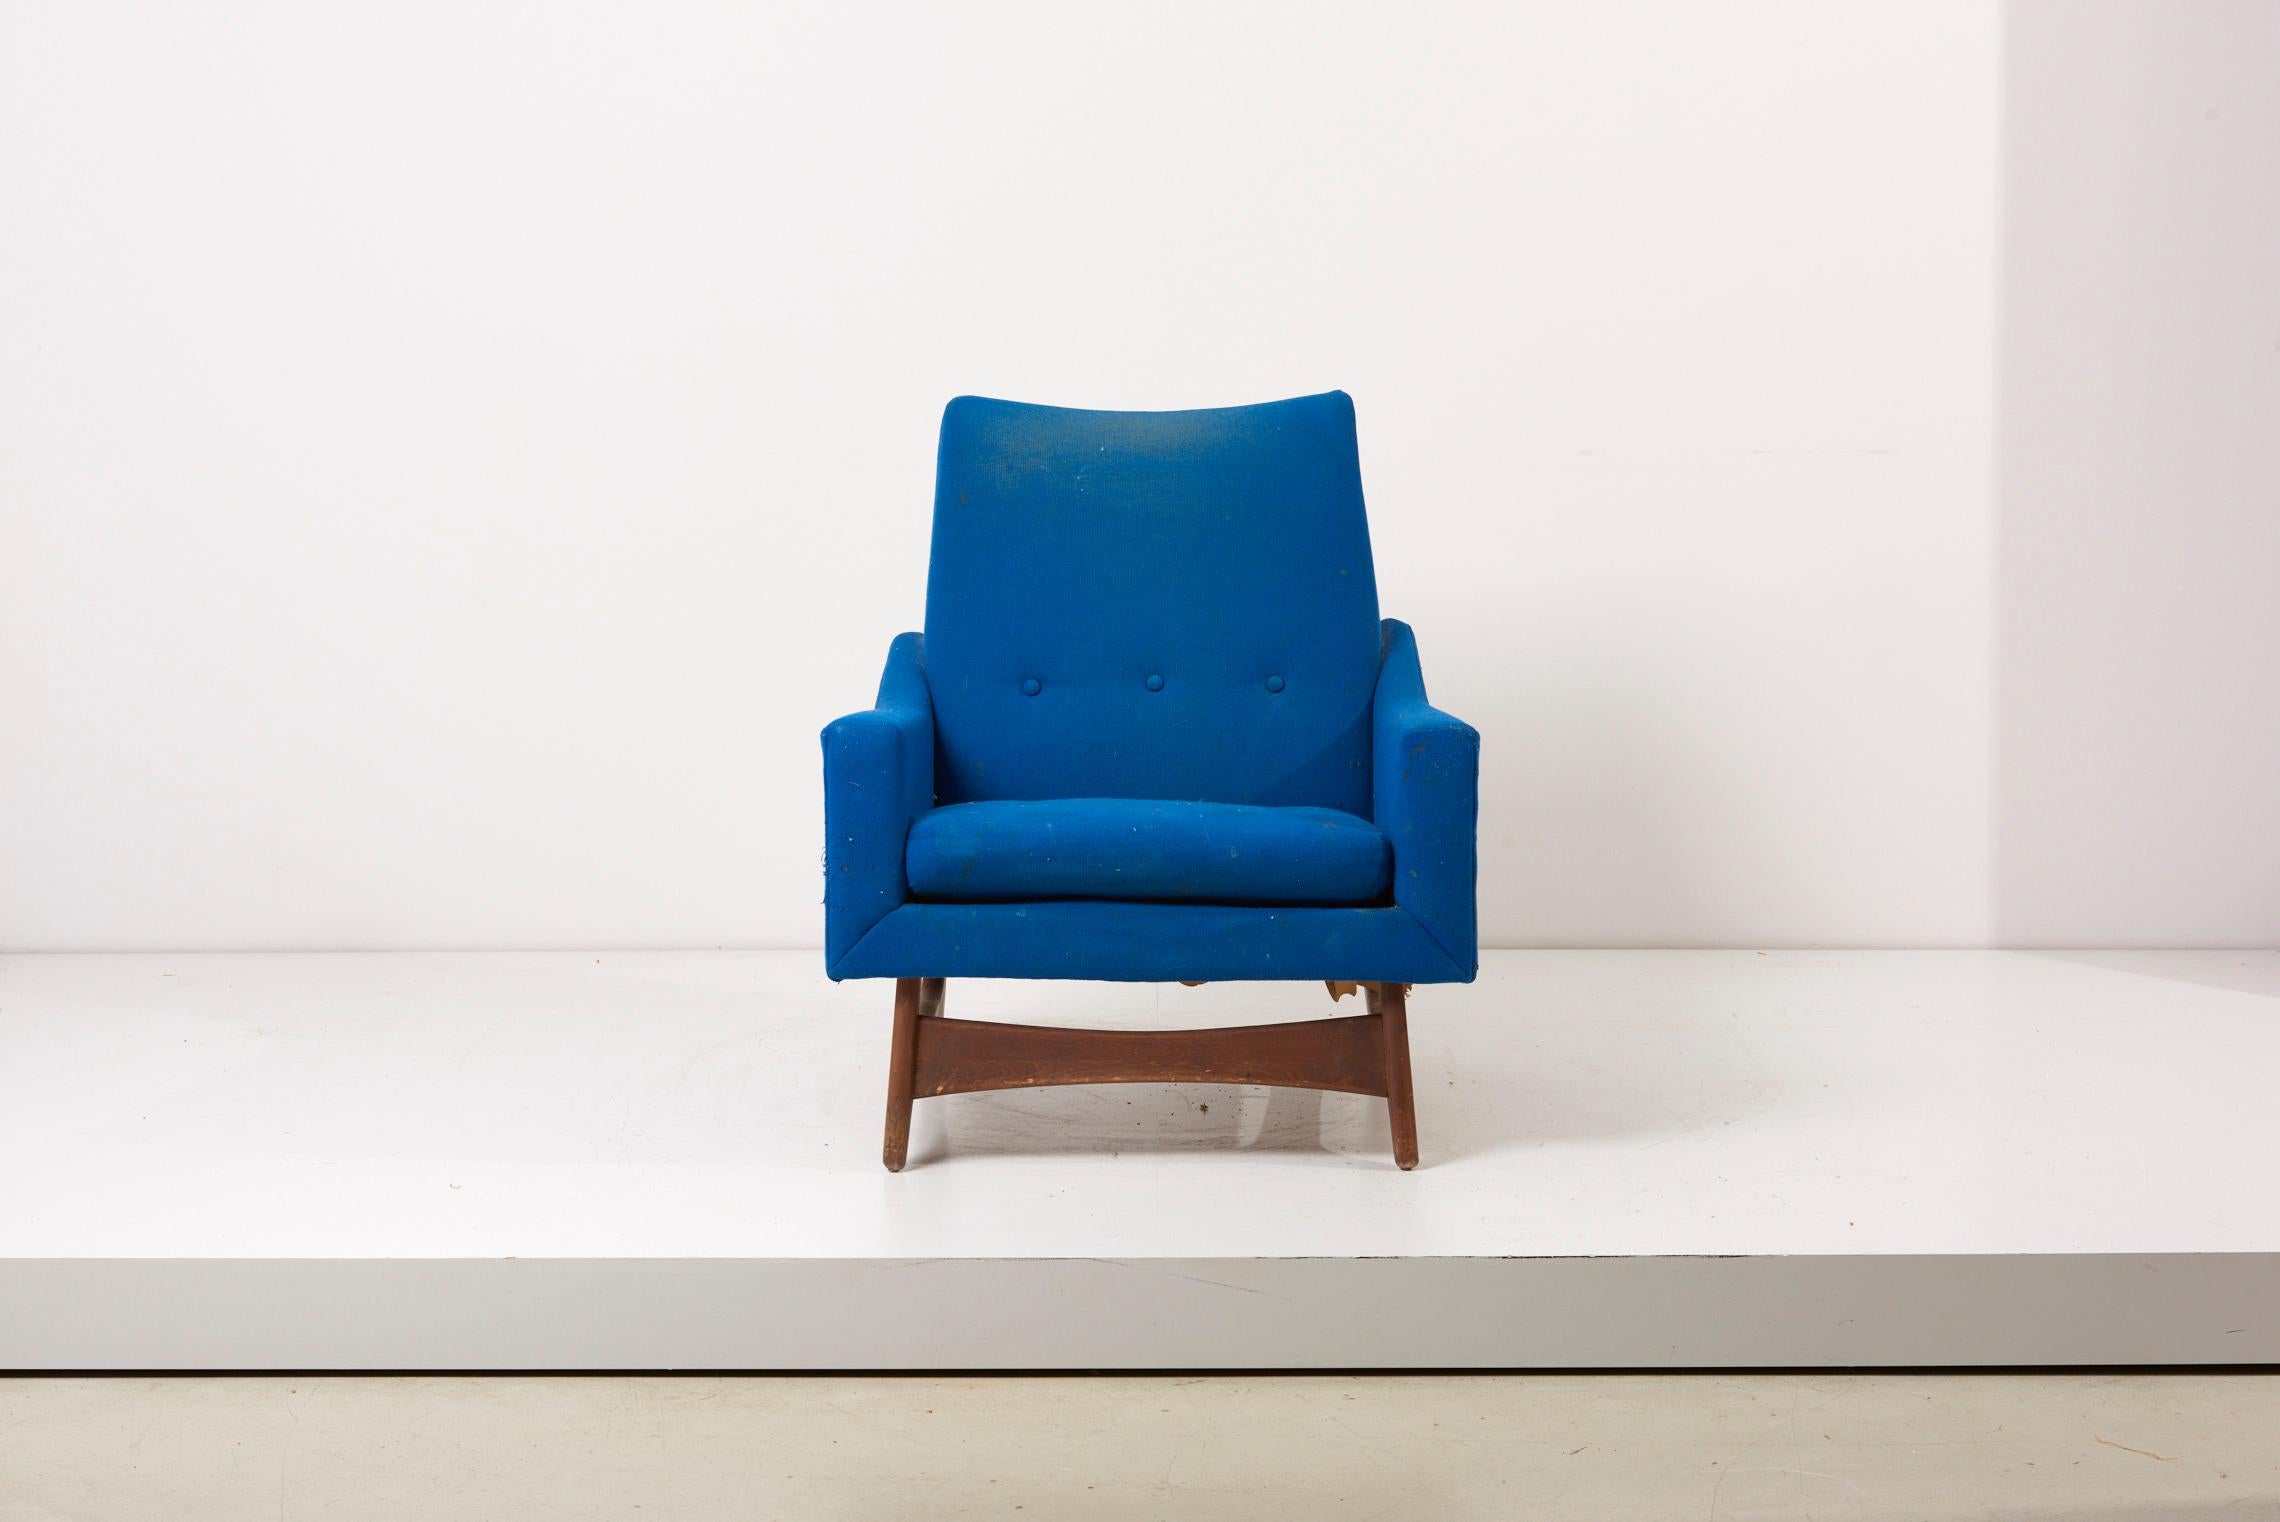 Adrian Pearsall Loungesessel mit kobaltblauem Stoff und Holzbeinen, USA 1960er Jahre. Der Stuhl ist im Originalzustand mit Vintage-Polsterung. Wir bieten Neupolsterungen in unserer hauseigenen Werkstatt an.